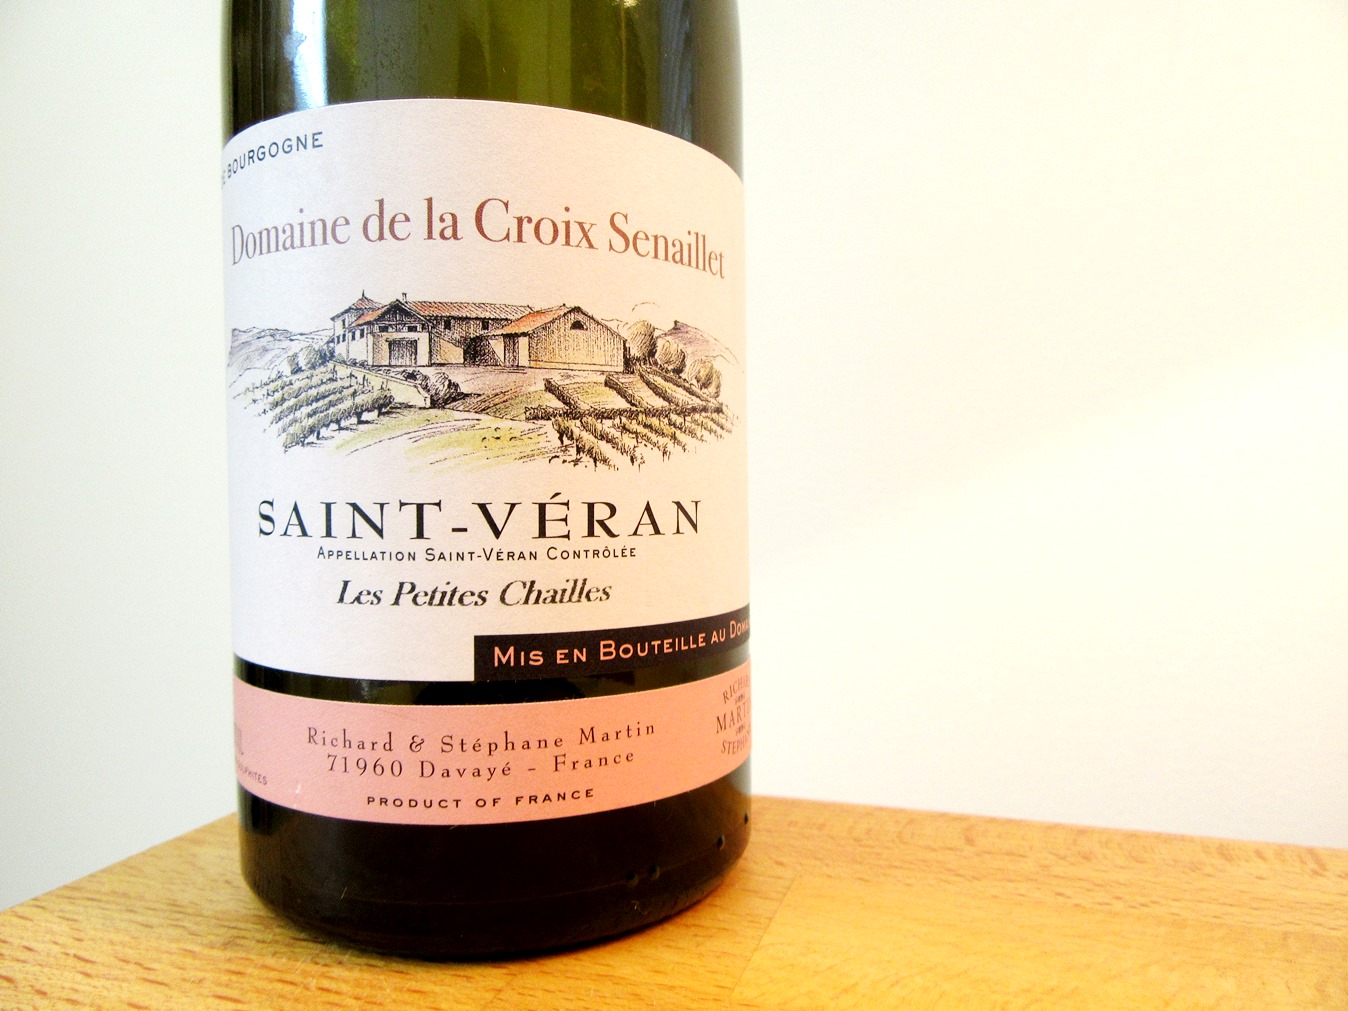 Domaine de la Croix Senaillet, Saint-Véran, Les Petites Chailles 2015, Burgundy, France, Wine Casual